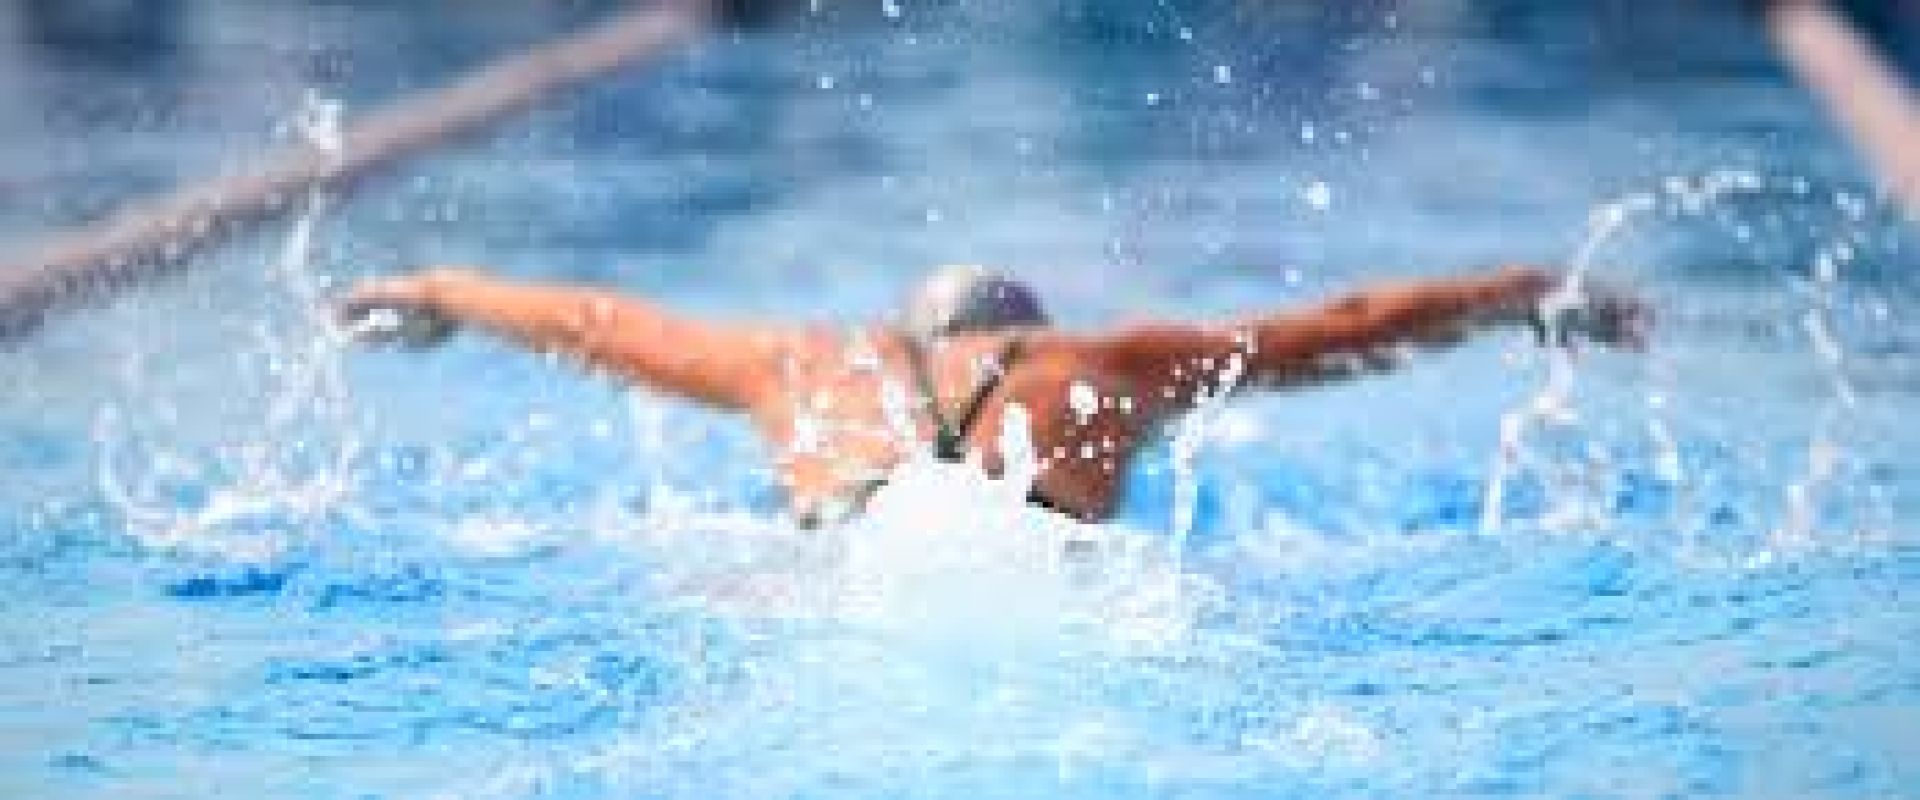 ΝΟ Σύρου: Προκήρυξη Διασυλλογικής Ημερίδας Κολύμβησης με την Επωνυμία ”Βικέλεια 2019”